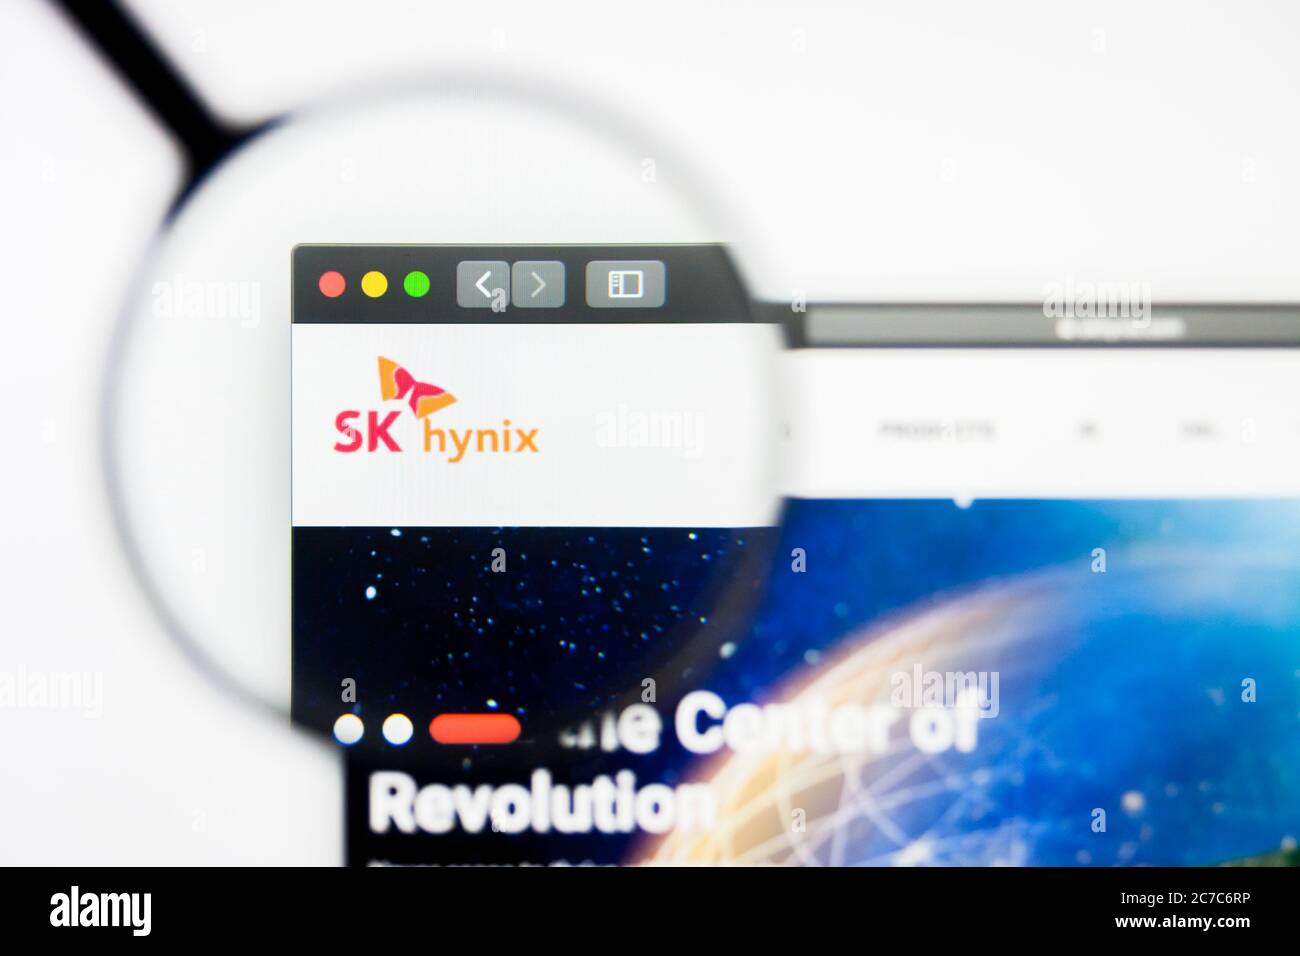 Los Angeles, Kalifornien, USA - 8. April 2019: Illustrative Editorial der Homepage von SK Hynix. SK Hynix Logo auf dem Display sichtbar. Stockfoto